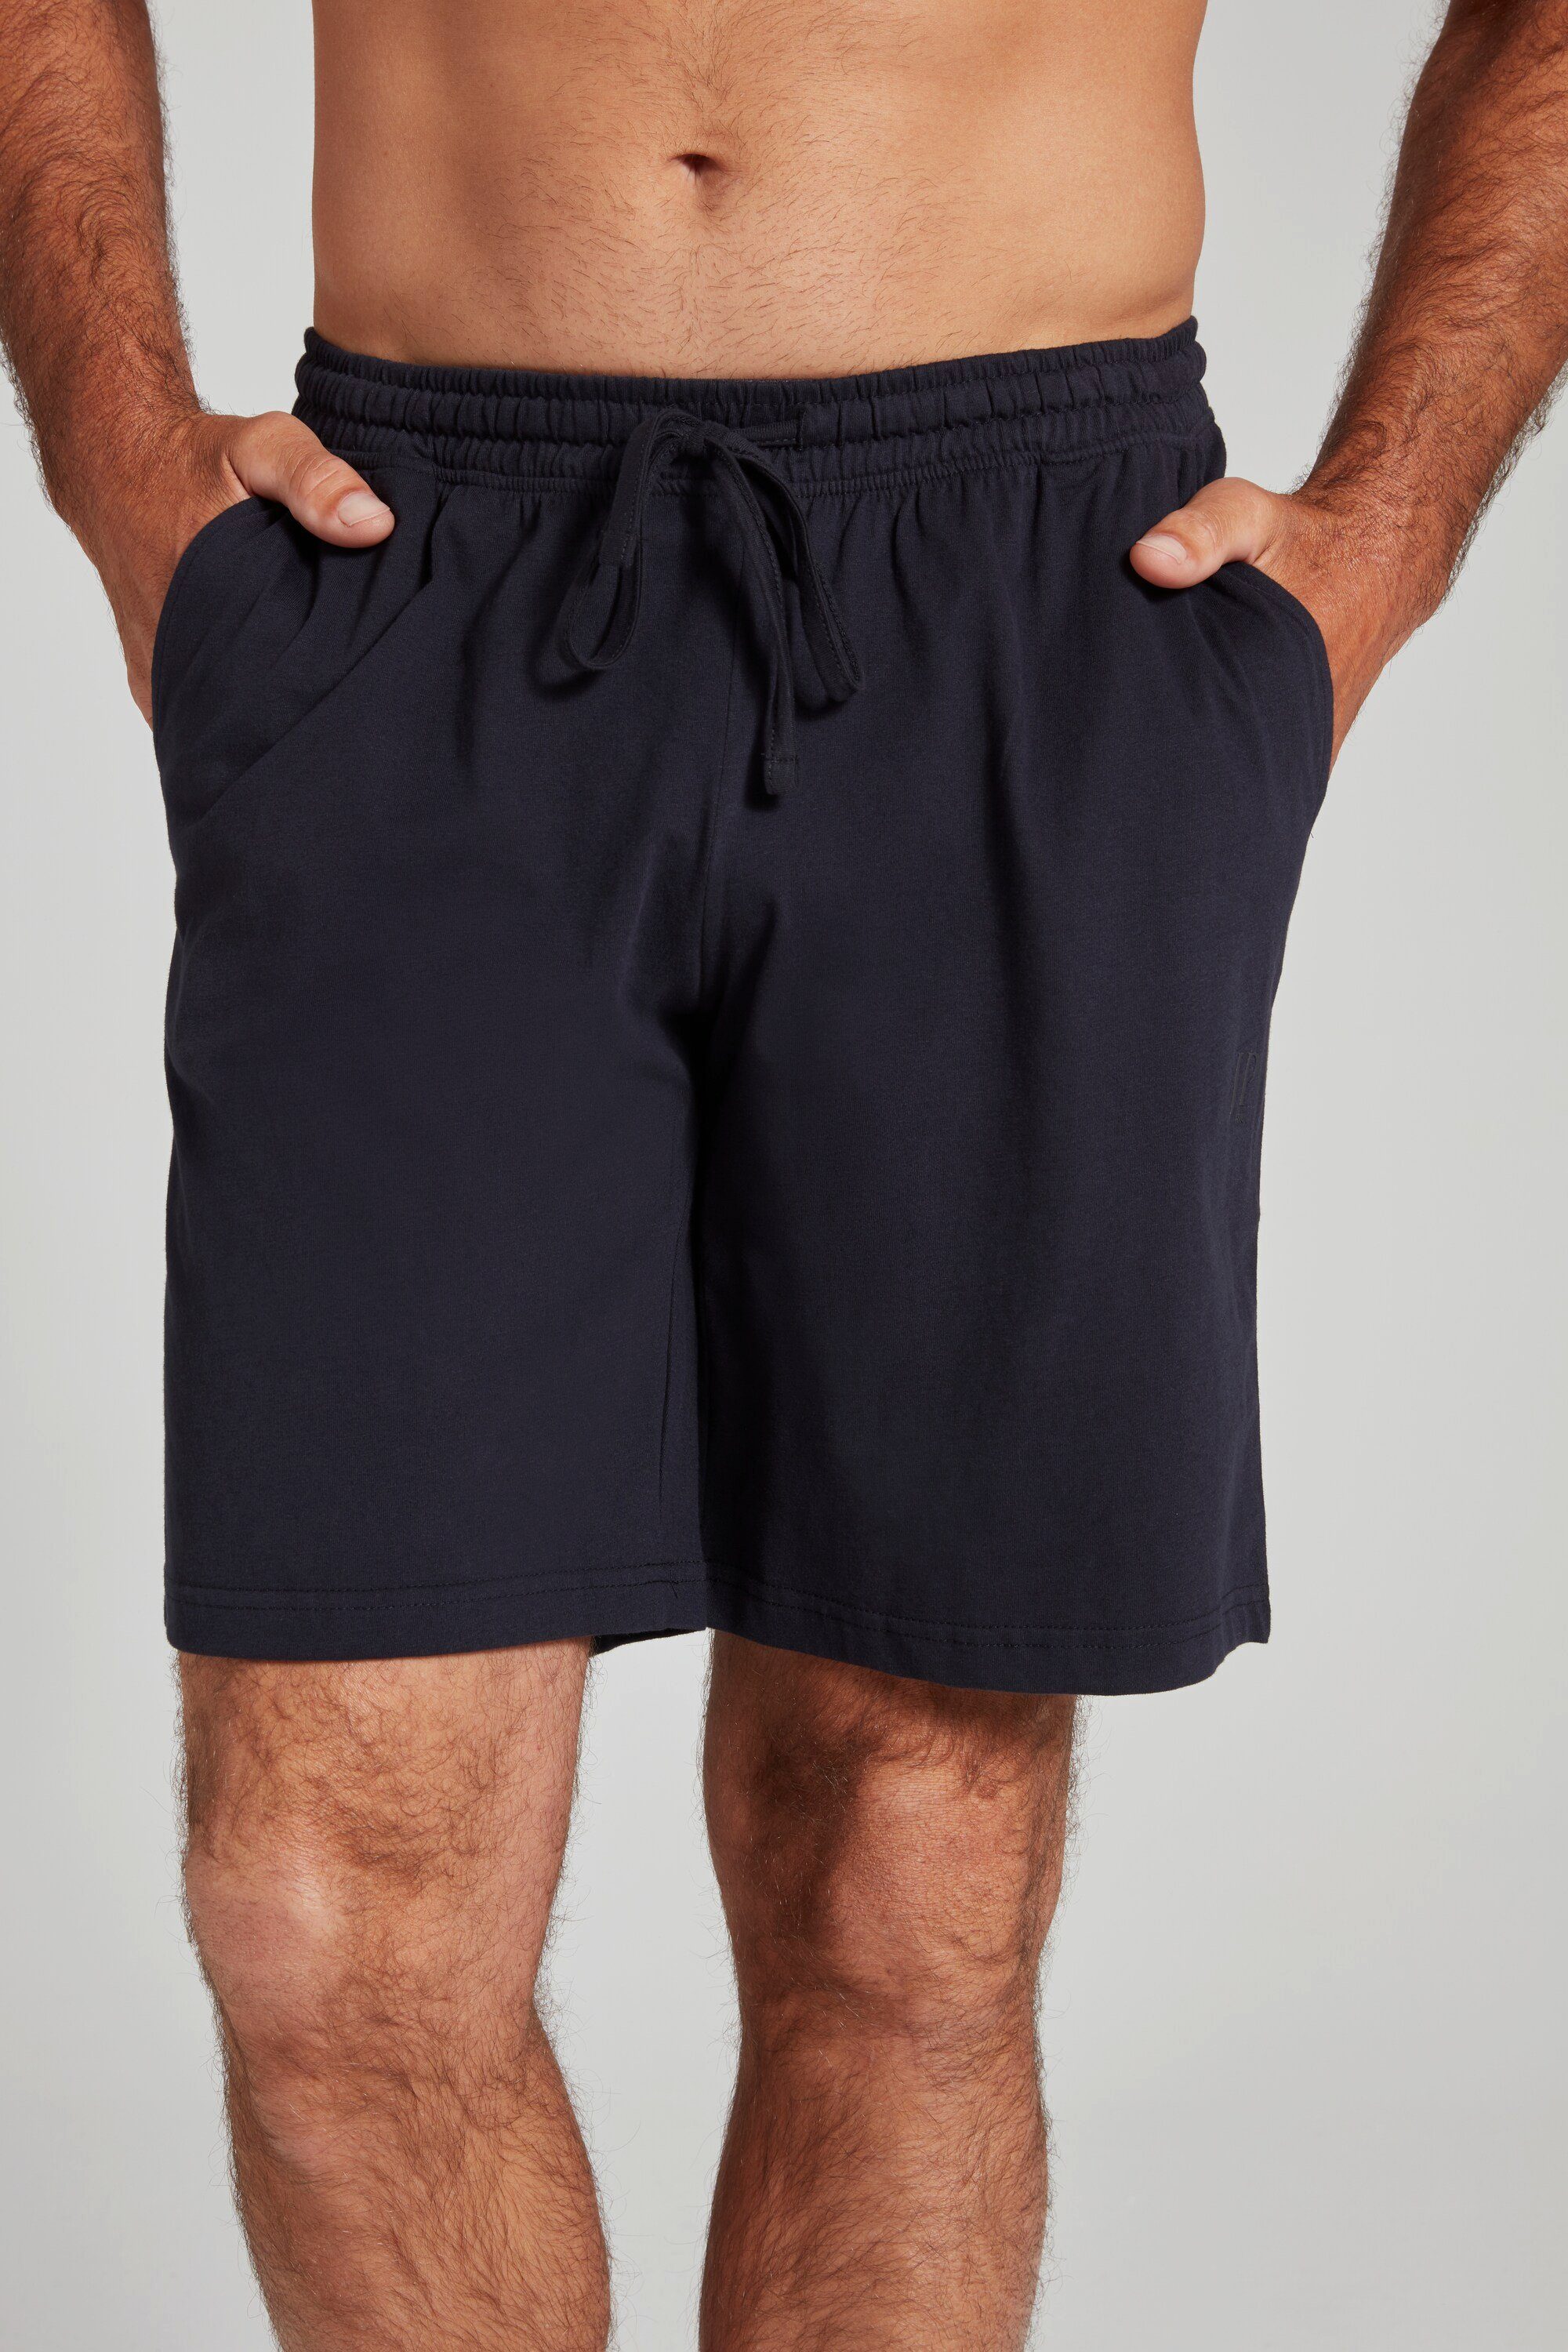 JP1880 Schlafanzug Schlafanzug Hose Homewear Shorts Elastikbund dunkel marine